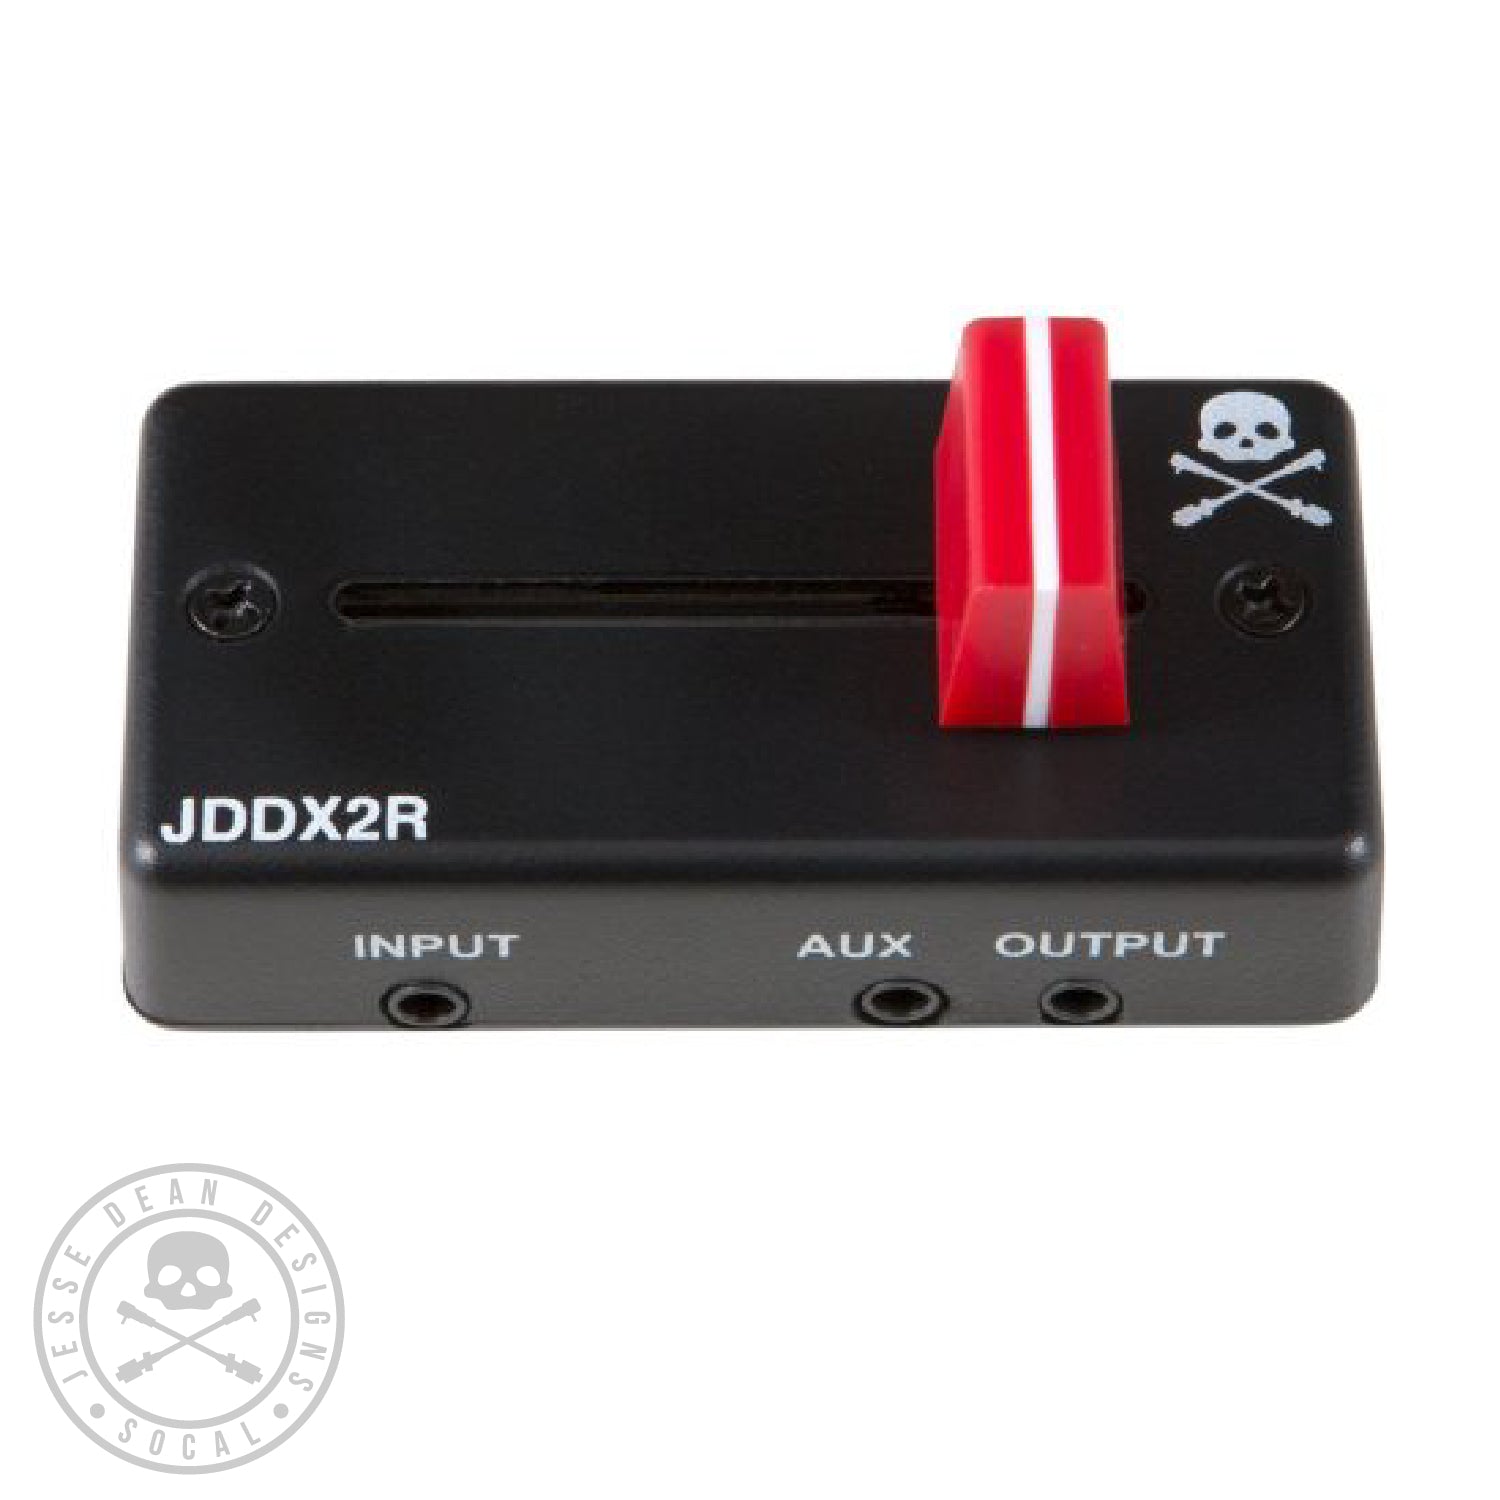 JDDX2R PORTABLE FADER – Jesse Dean Designs